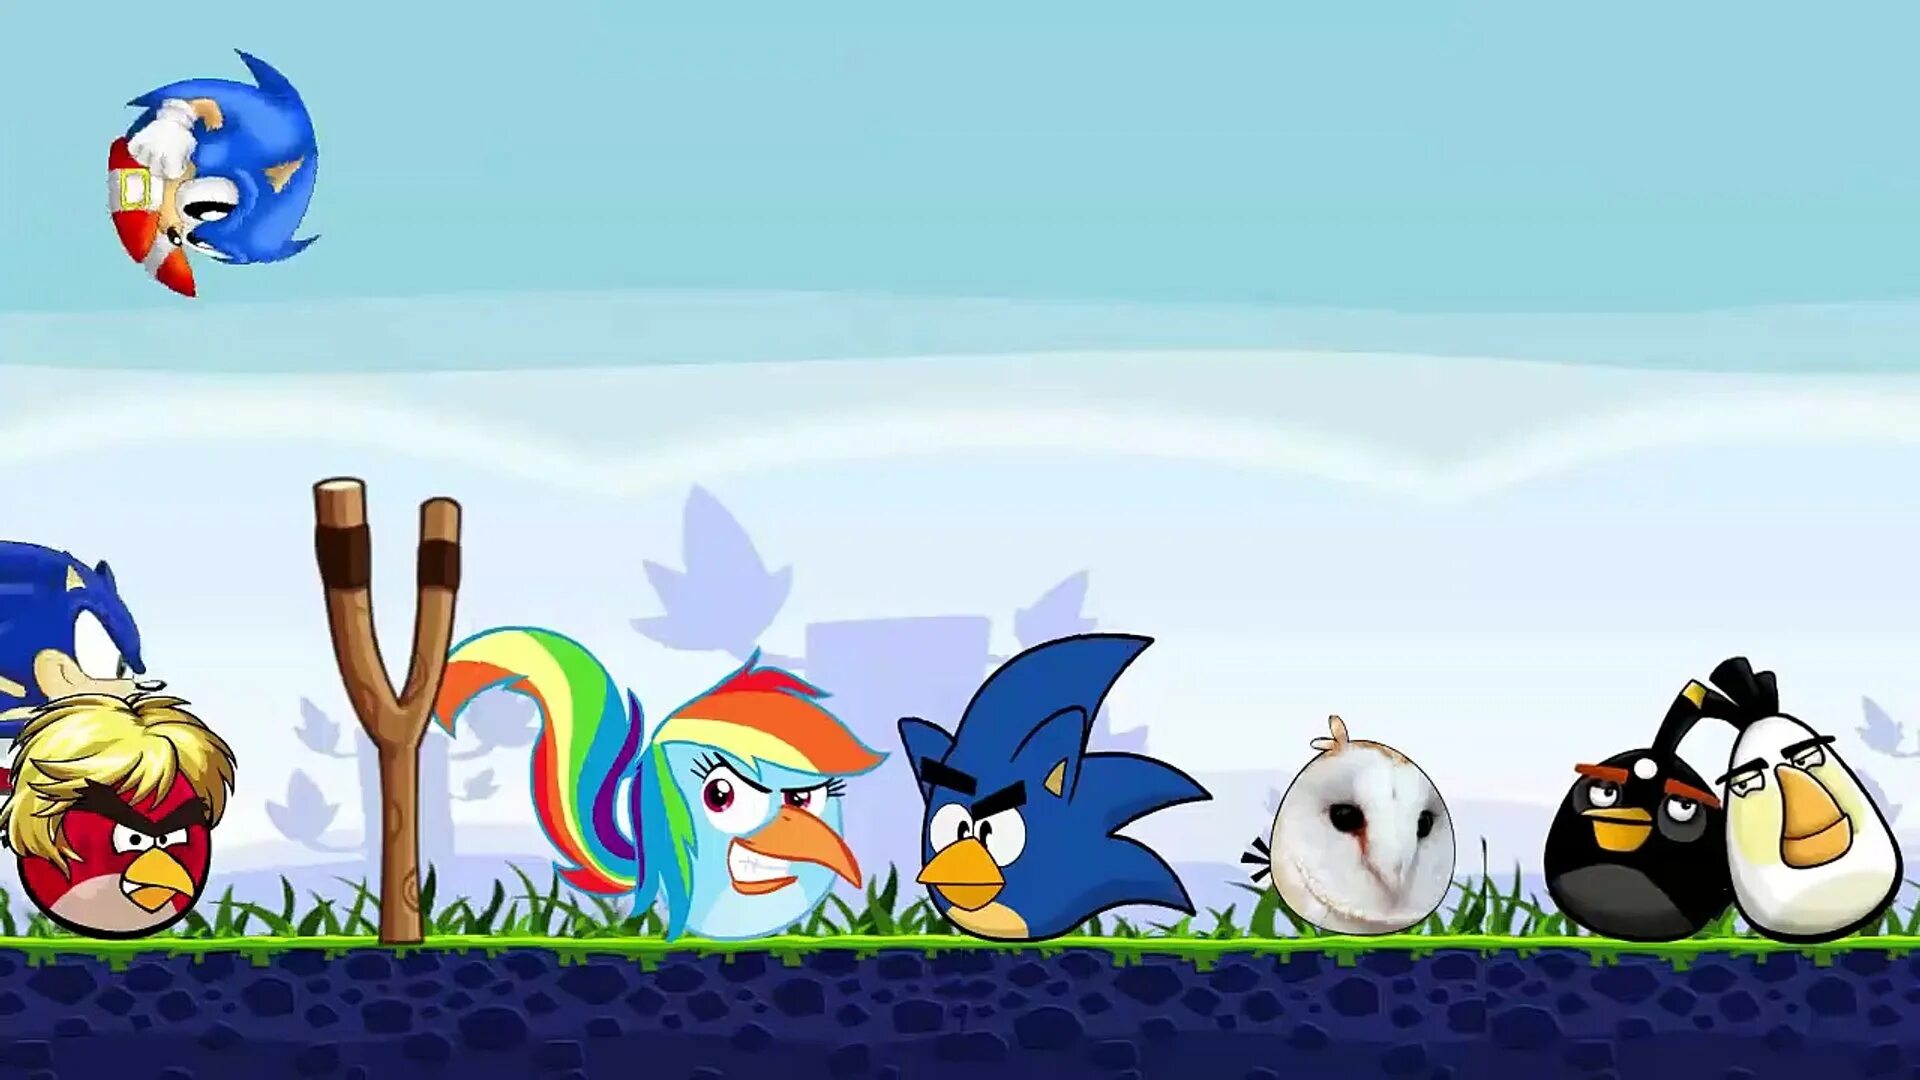 Sonic angry birds. Соник и Angry Birds. Энгри бердз против Соника. Соник бум и злые птички. Sonic in Angry Birds.